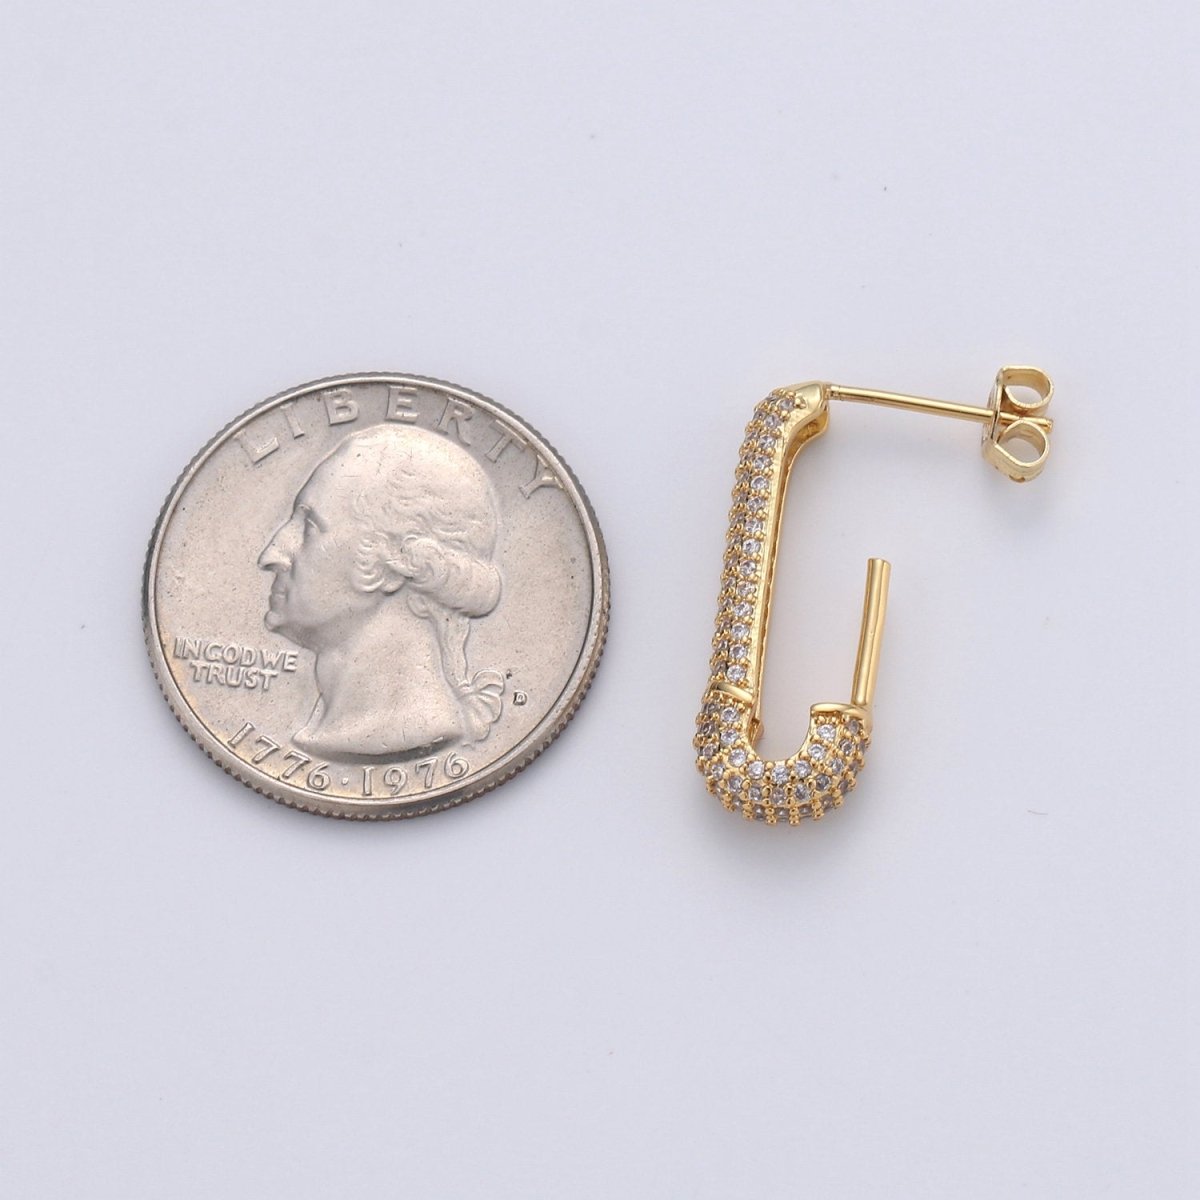 Dainty Gold Stud Earring Dangle Hoop Earrings, Micro Pave Statement Earrings, Minimalist Earrings CZ Cubic Simple earring Gift for Her K-623 - DLUXCA